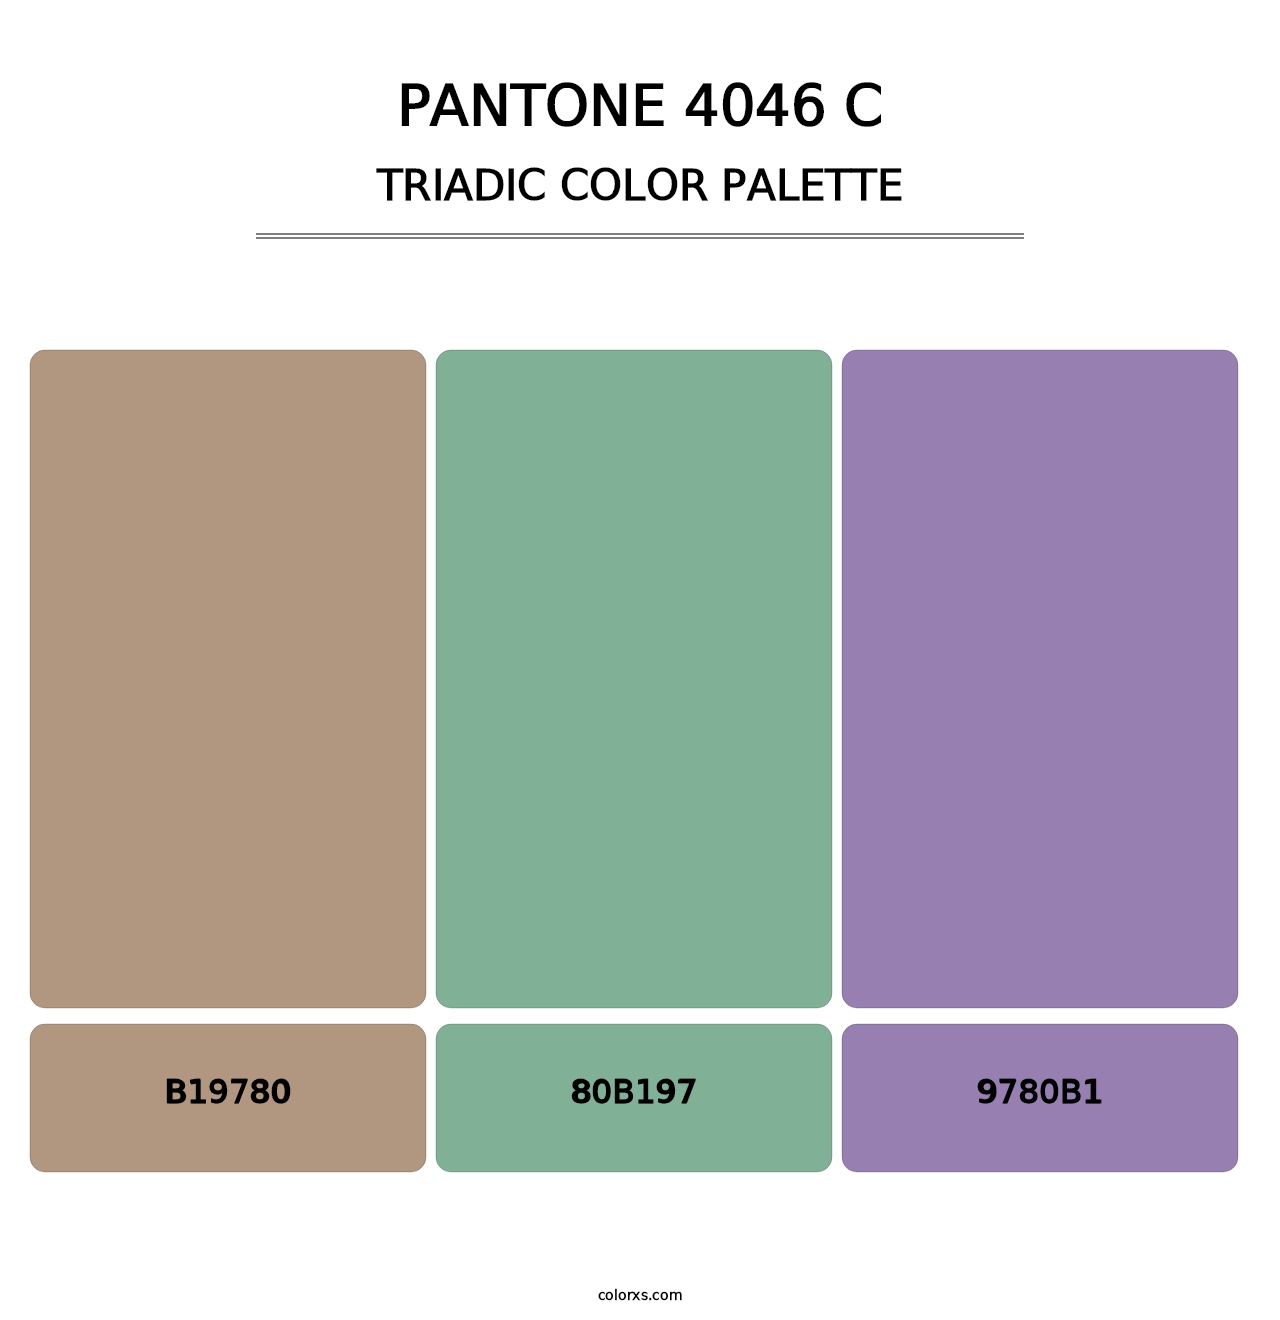 PANTONE 4046 C - Triadic Color Palette